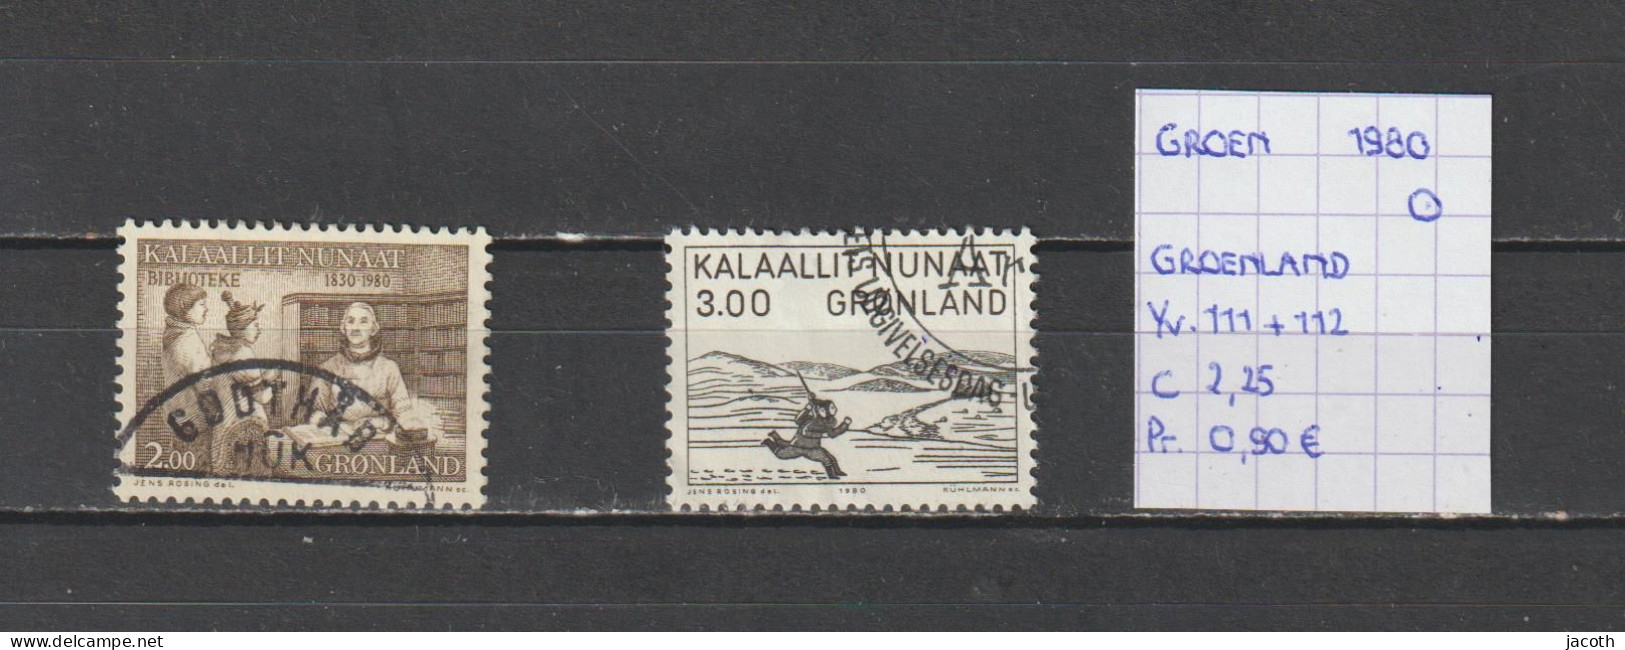 (TJ) Groenland 1980 - YT 111 + 112 (gest./obl./used) - Gebraucht